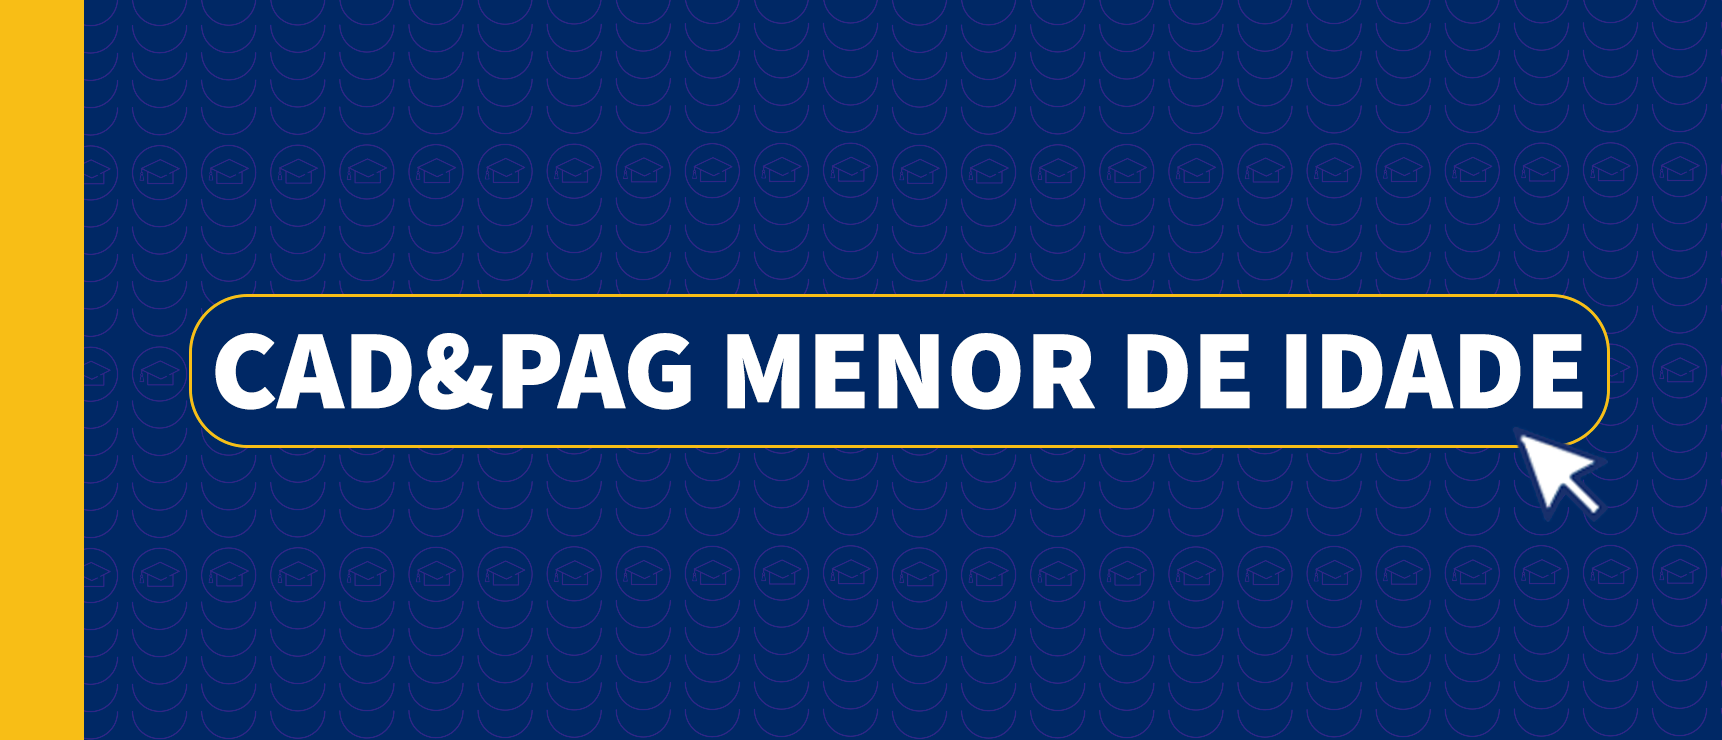 CAD_PAG MENOR DE IDADE.png